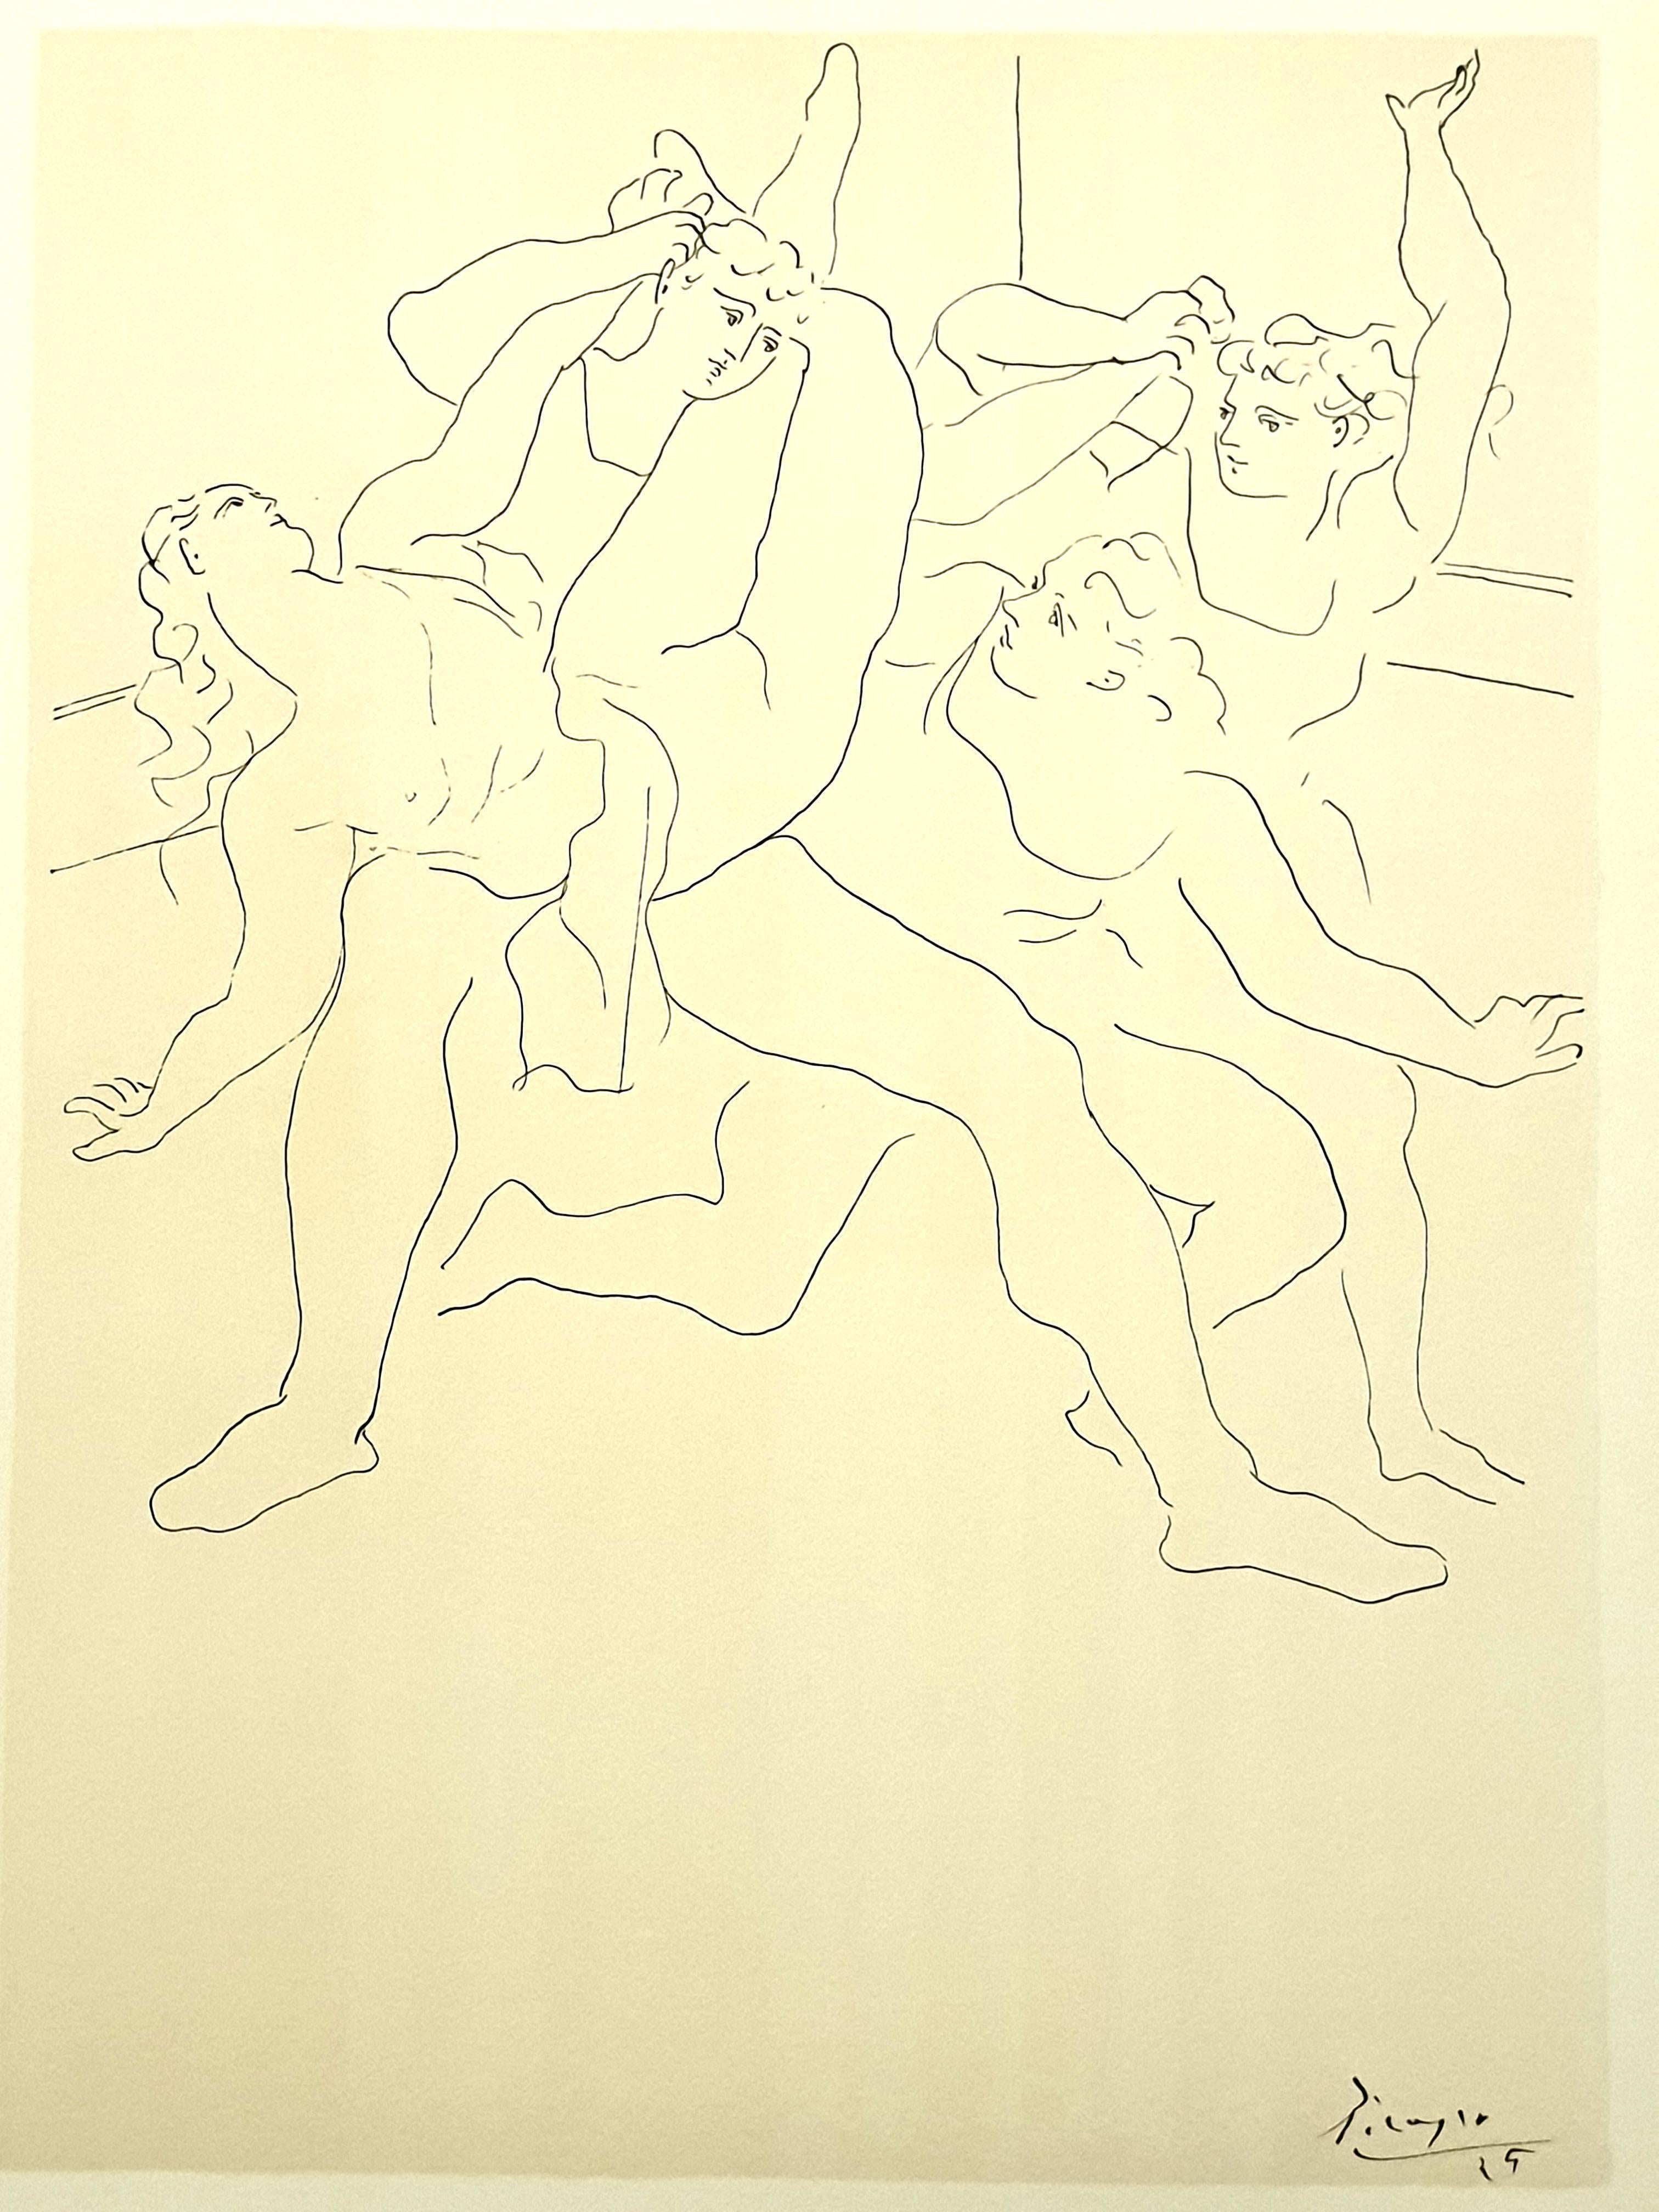 (after) Pablo Picasso Portrait Print - Pablo Picasso (after) - Four Ballet Dancers - Lithograph